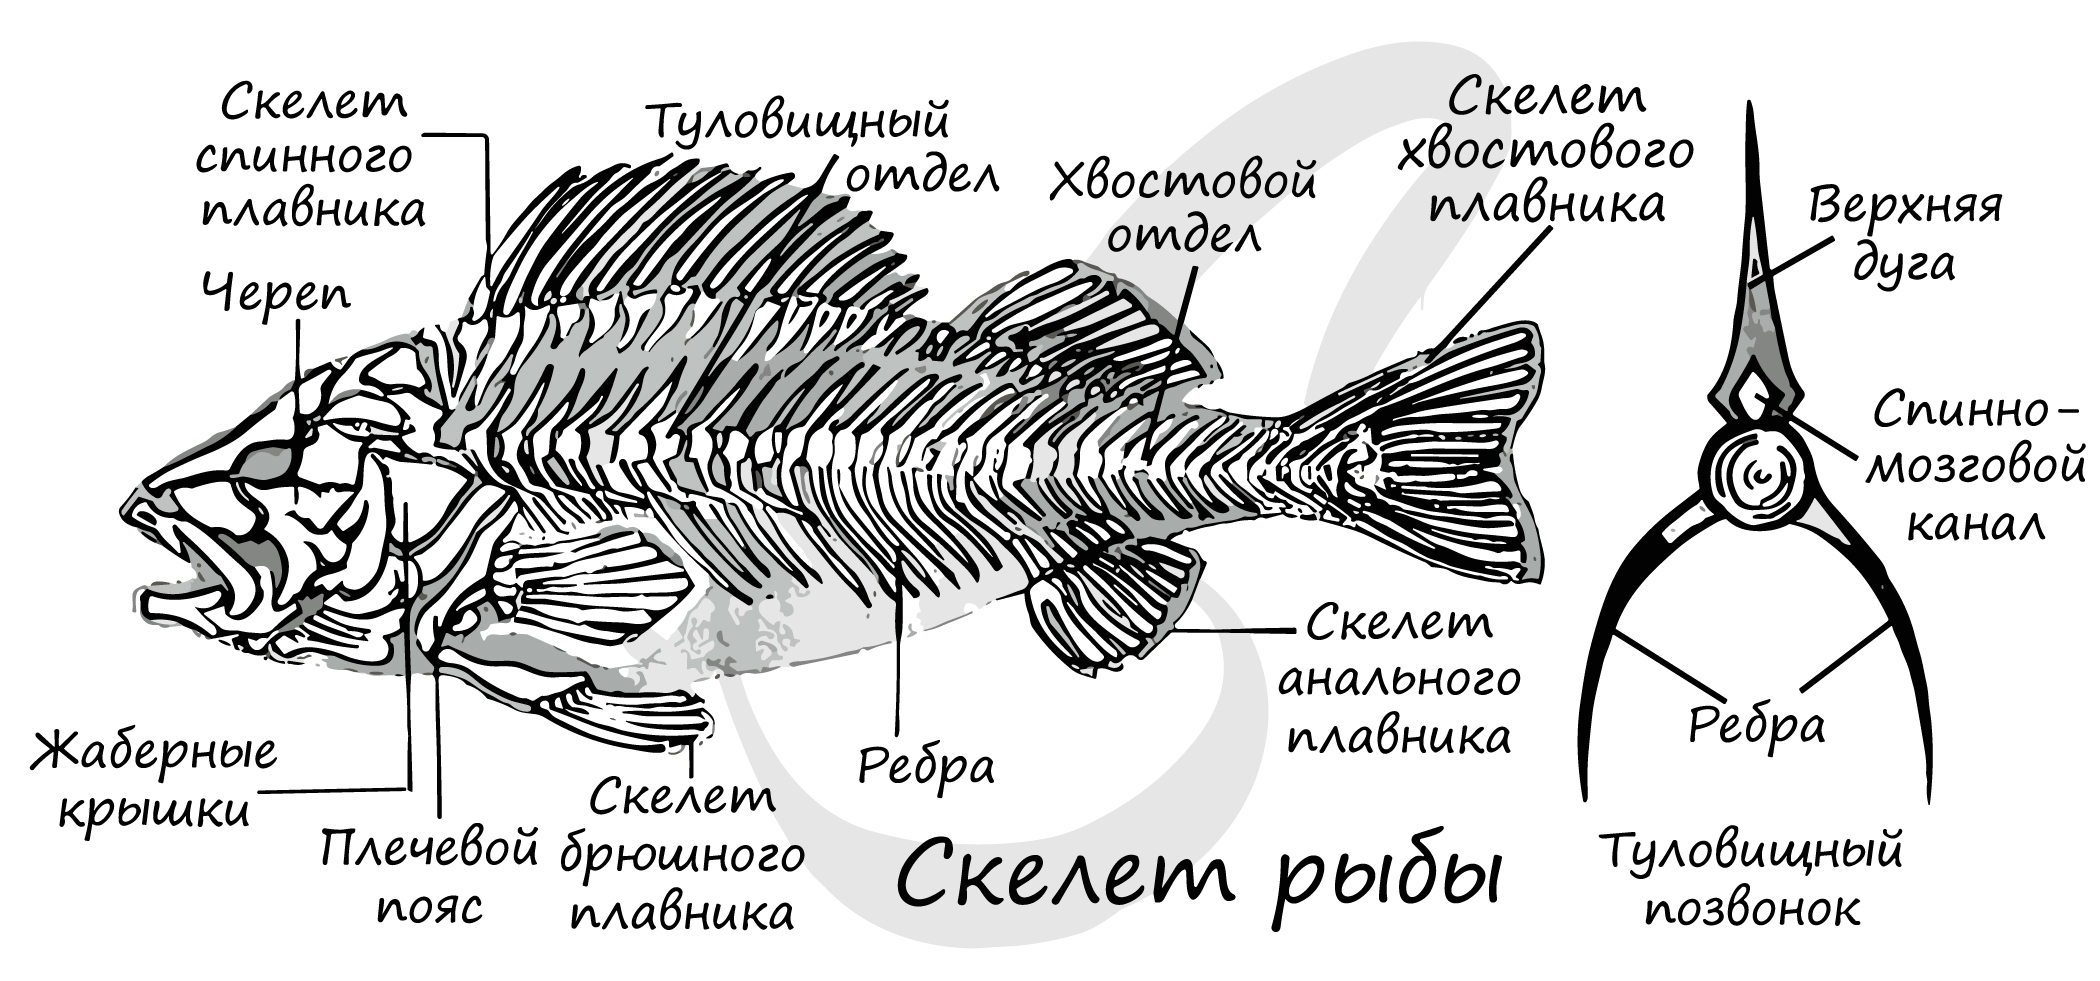 Внутренний скелет костной рыбы. Внутреннее строение костной рыбы скелет. Скелет костистой рыбы с подписями. Строение скелета костистой рыбы. Скелет костистой рыбы Речной окунь биология 7 класс.